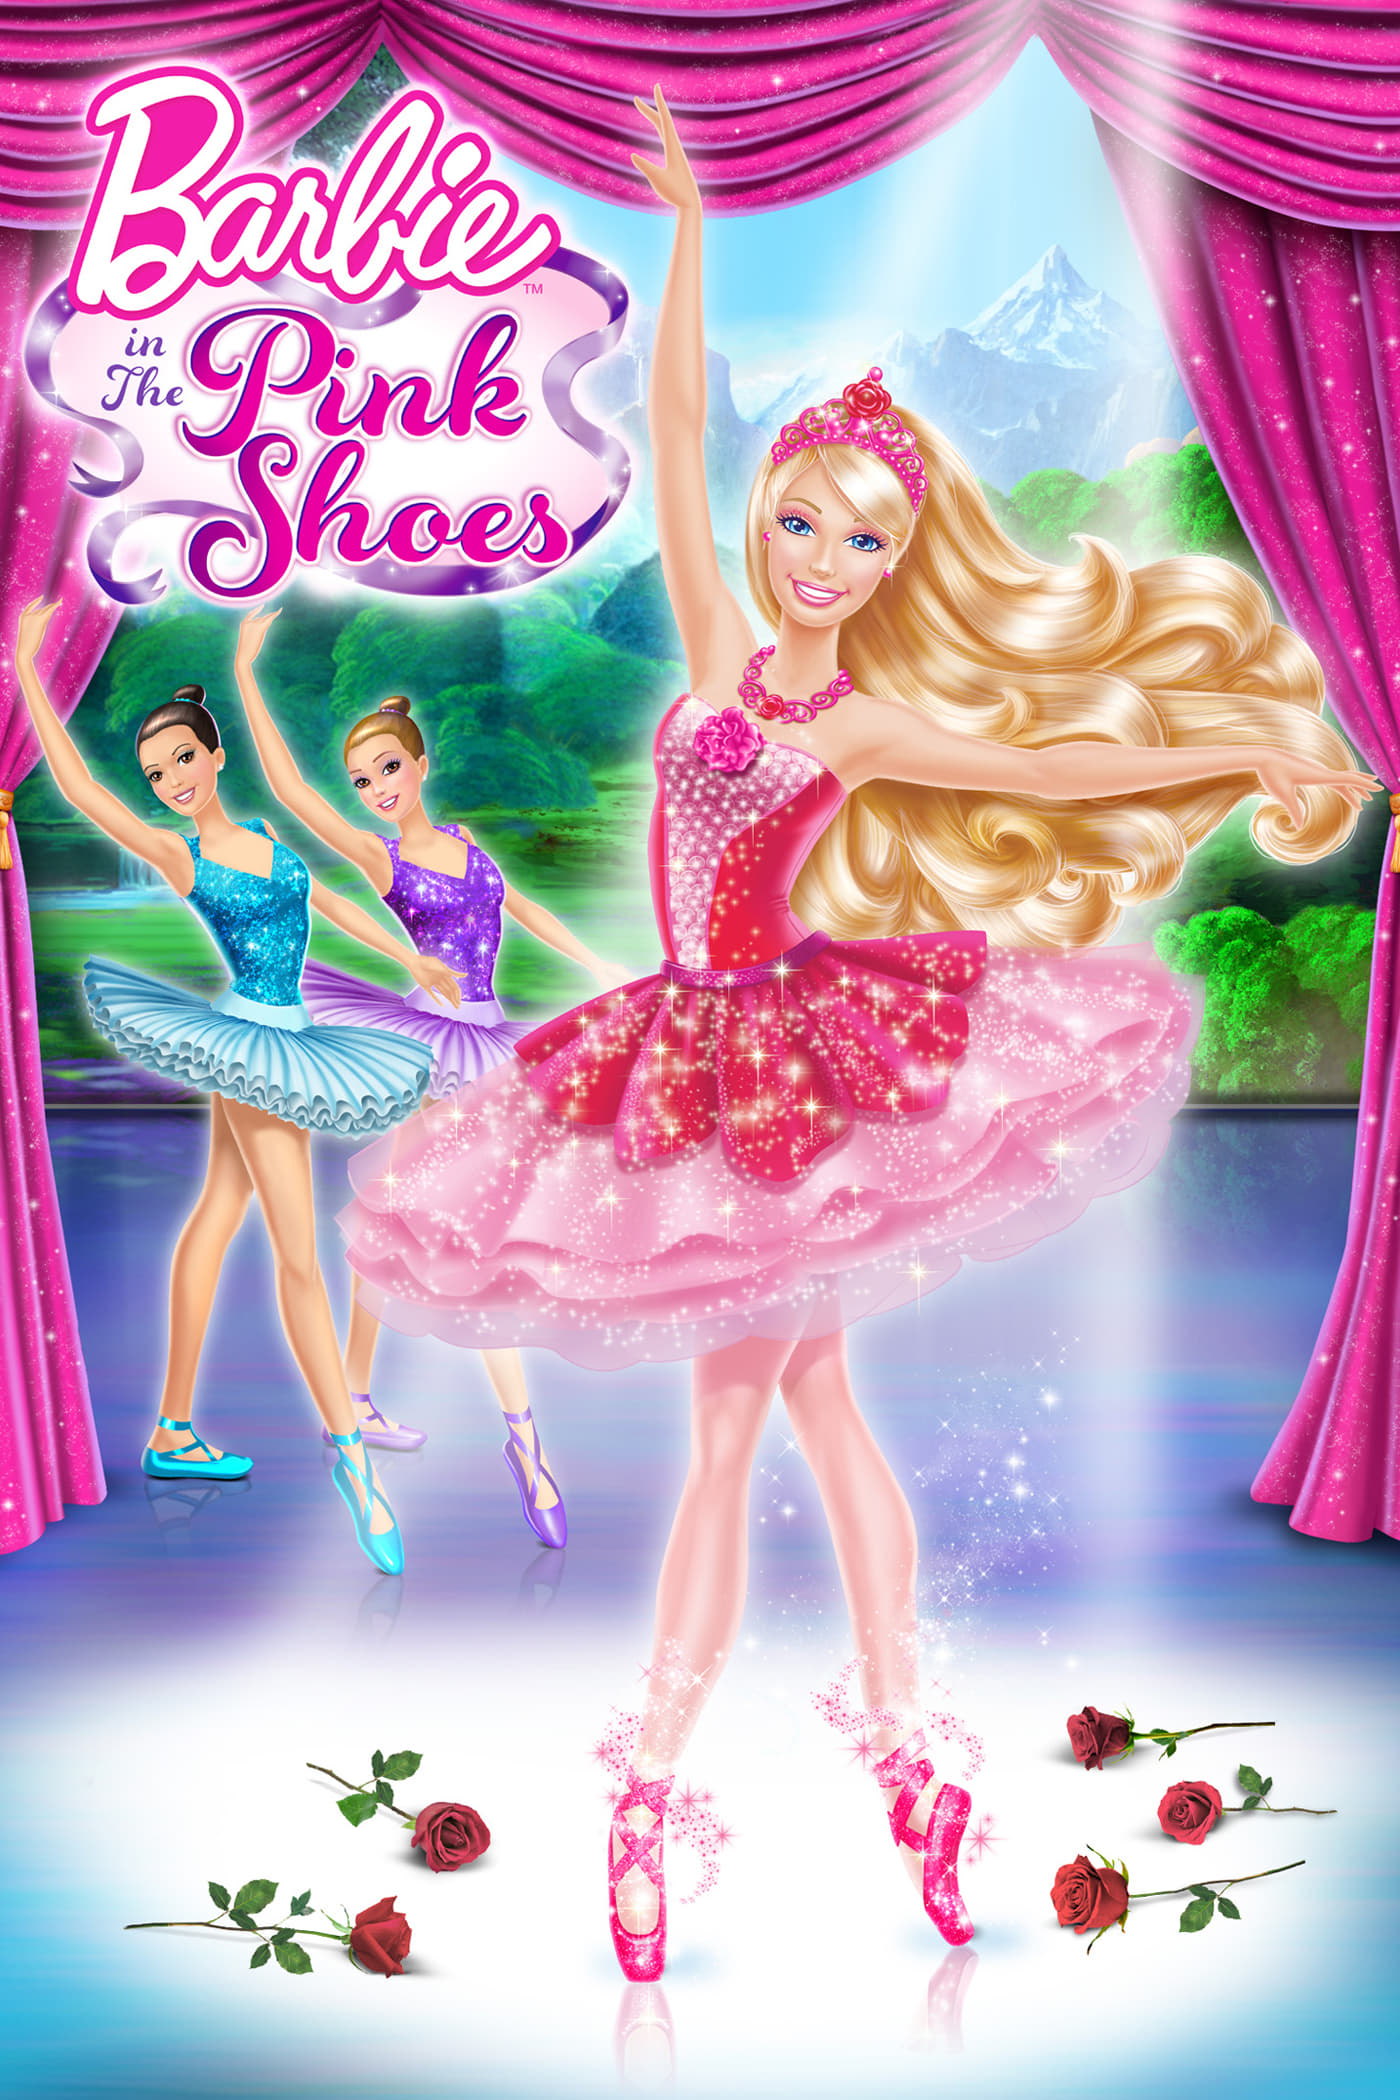 Barbie en La bailarina mágica